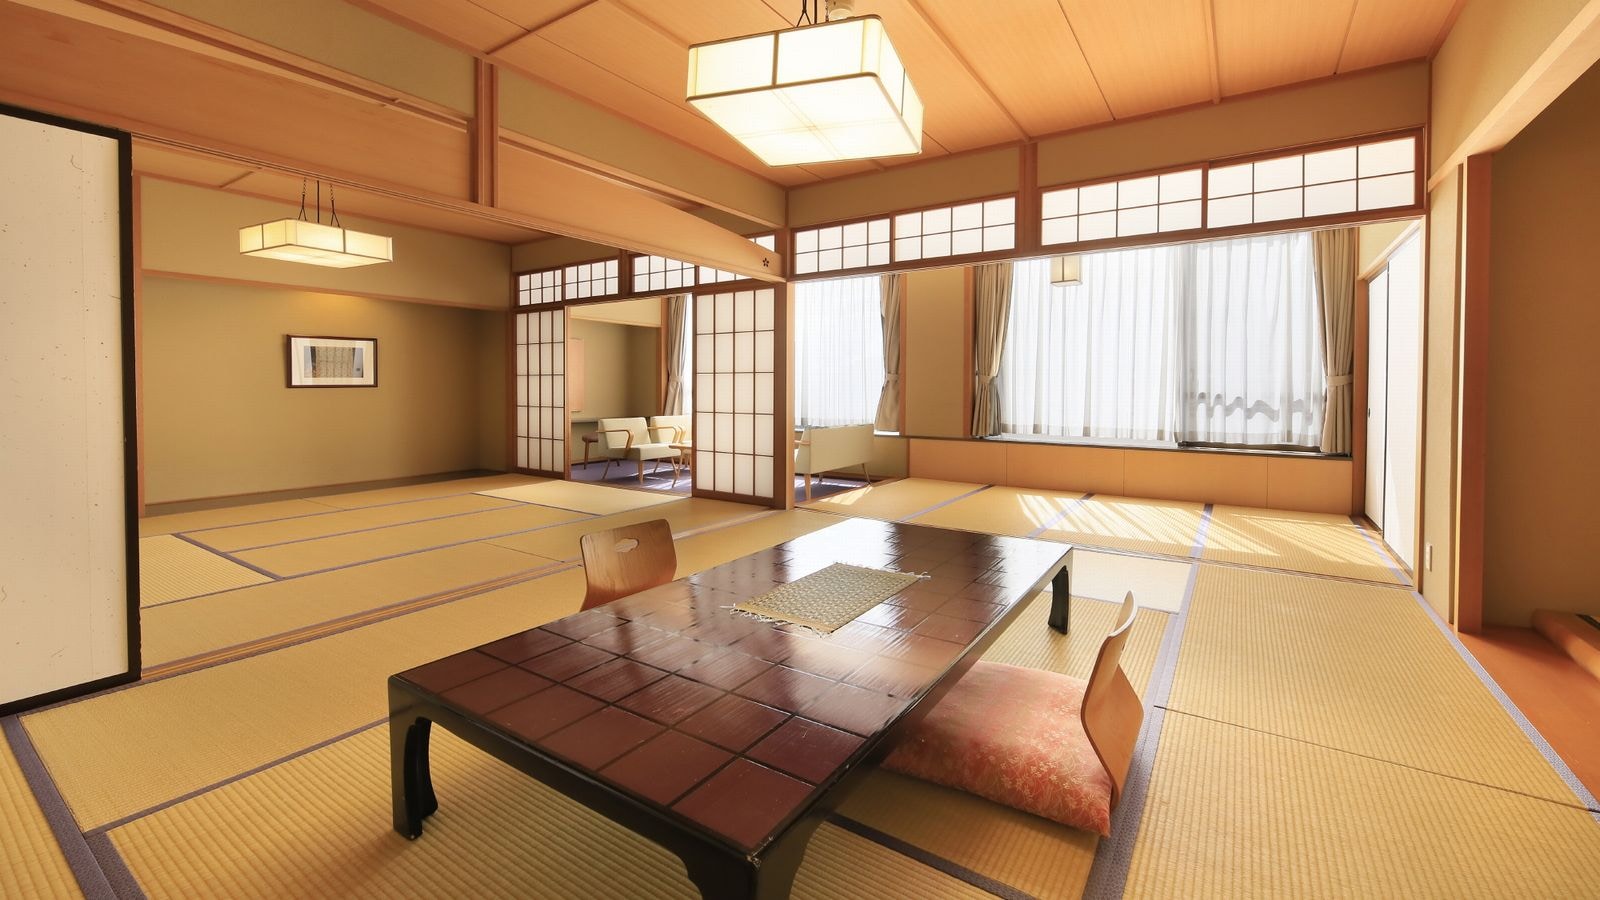 ■ ห้องพิเศษปลอดบุหรี่ ■ "ห้องสไตล์ญี่ปุ่น" 10 เสื่อทาทามิ + 10 เสื่อทาทามิ + ขอบกว้าง [มีอ่างอาบน้ำและห้องส้วม]